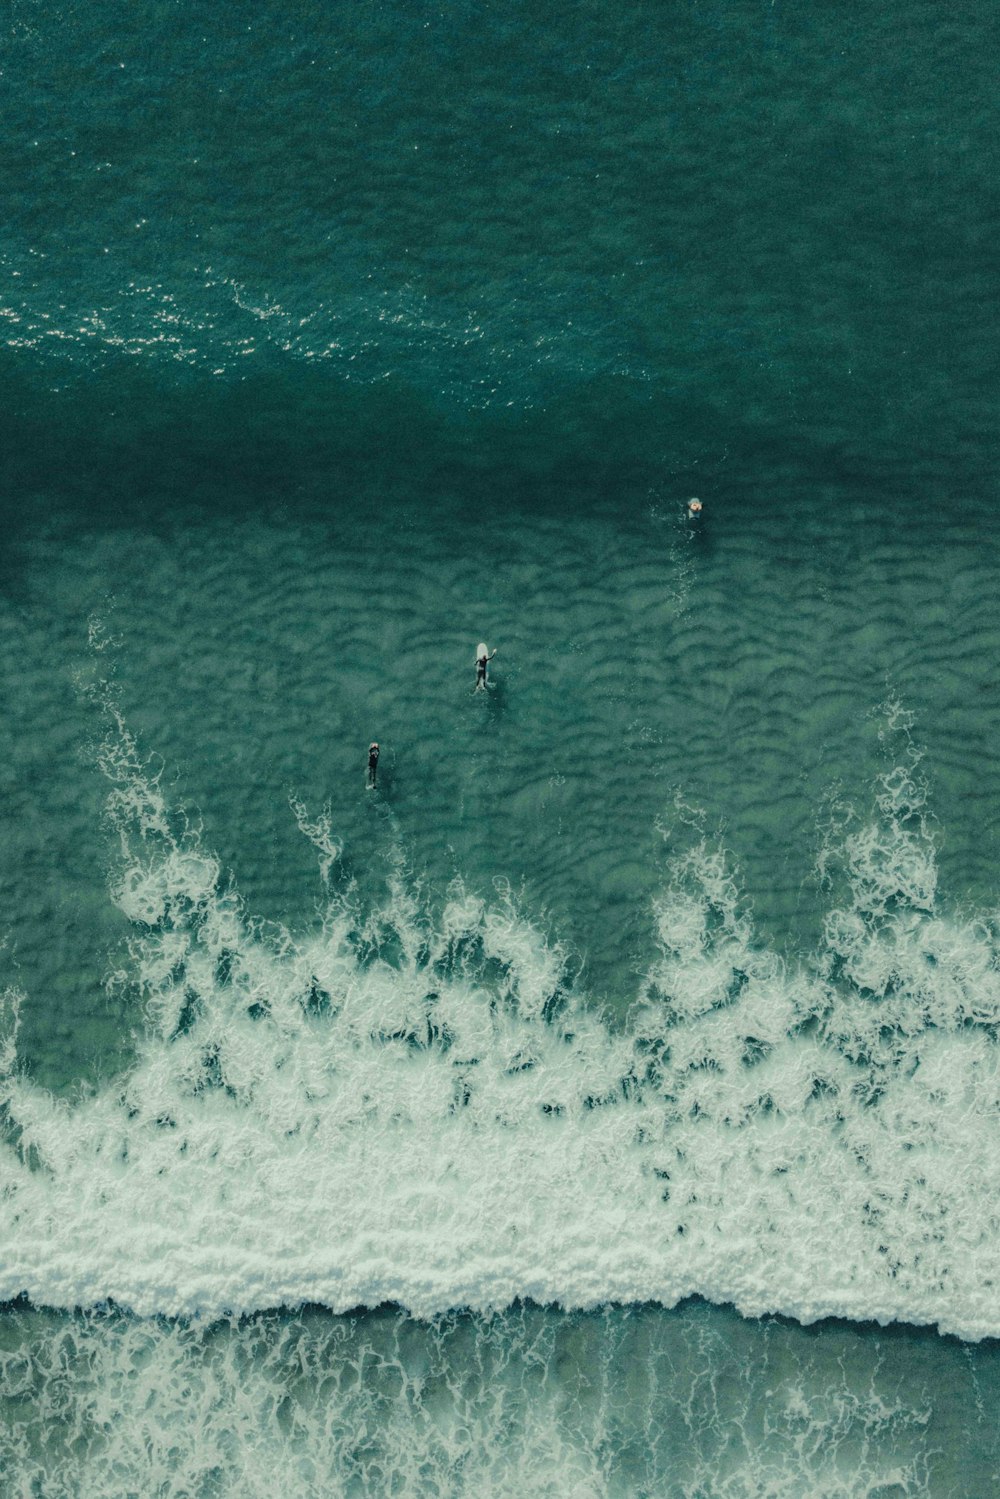 Un grupo de personas montando tablas de surf encima de una ola